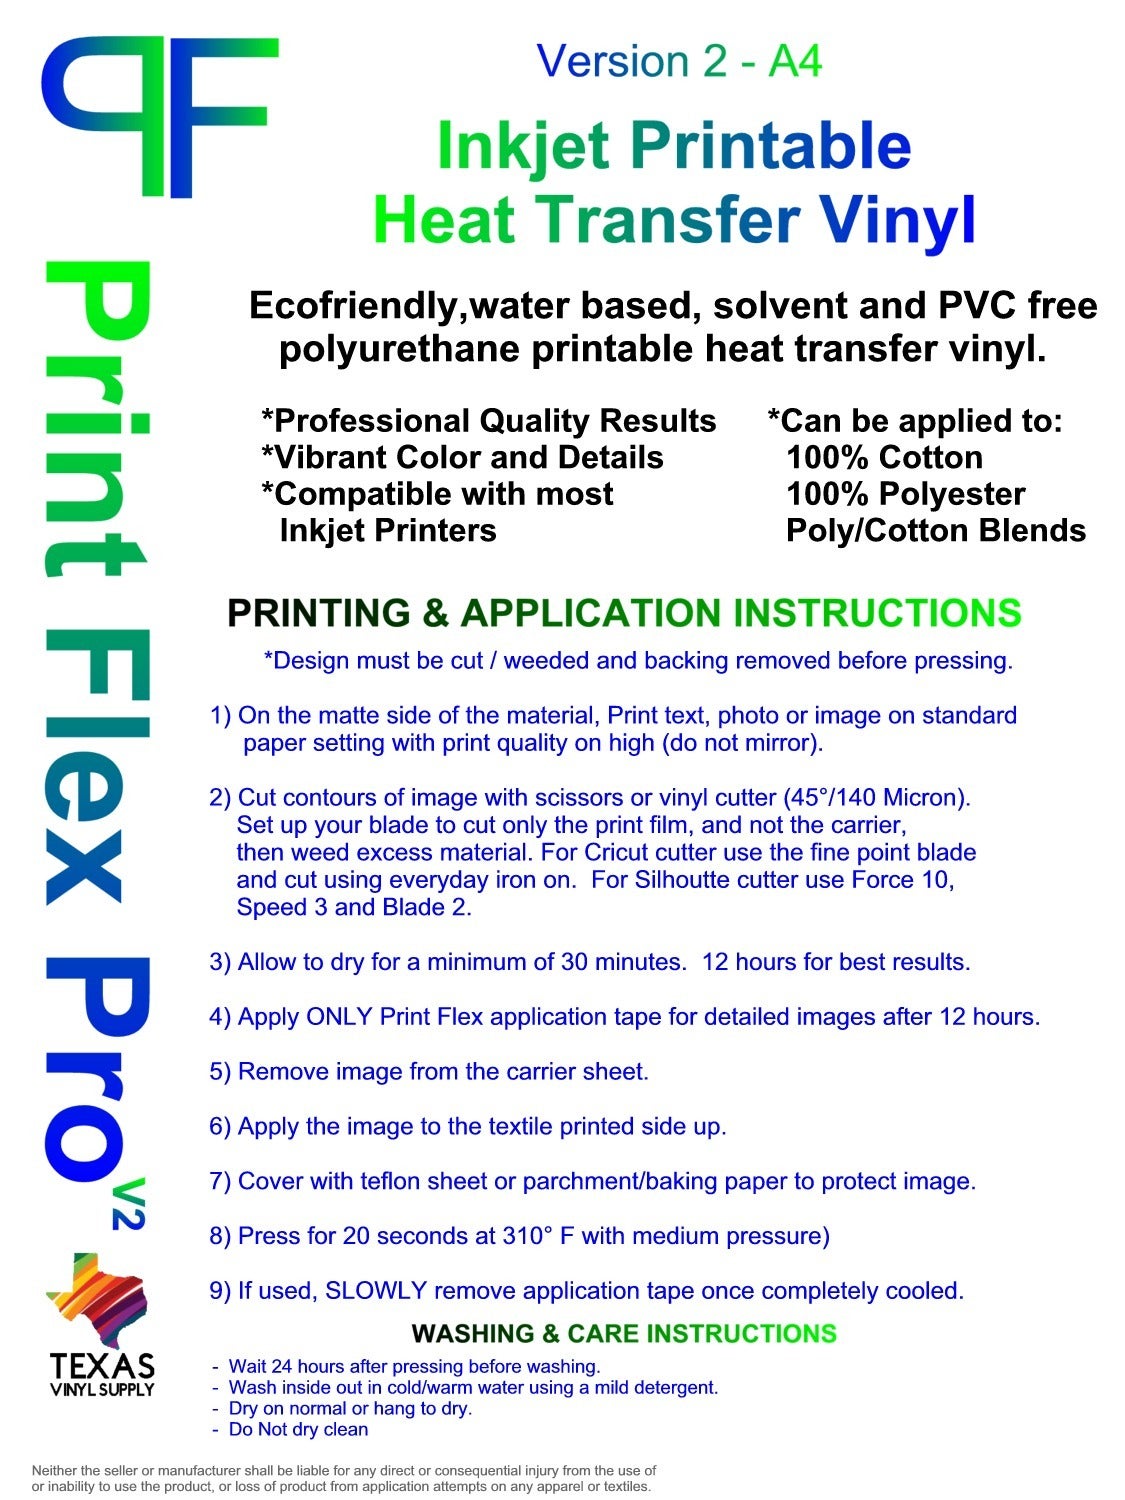 StarCraft Inkjet Printable Heat Transfer Vinyl for Light Materials